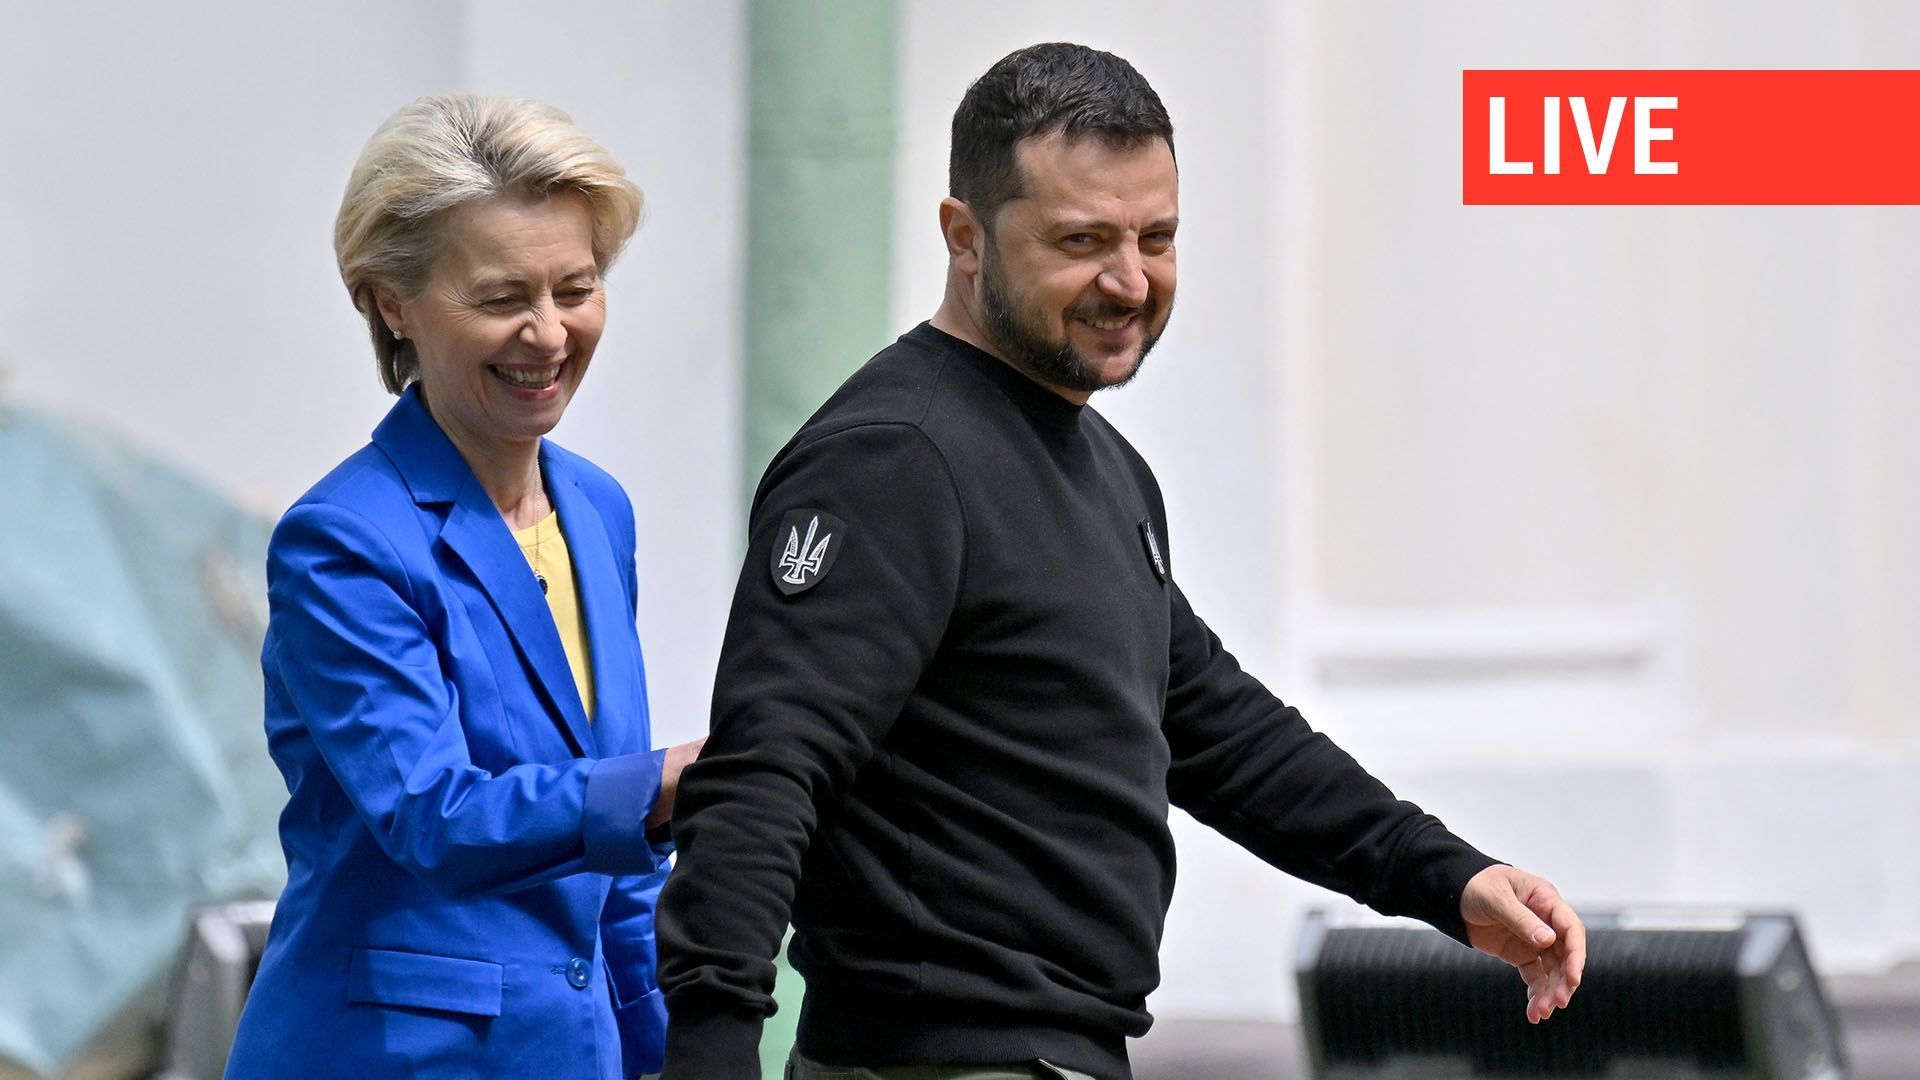 Le président ukrainien Volodymyr Zelensky (à droite) et la présidente de la Commission européenne Ursula von der Leyen (à gauche) se quittent après une conférence de presse à Kiev le 9 mai 2023. La présidente de la Commission européenne Ursula von der Ley